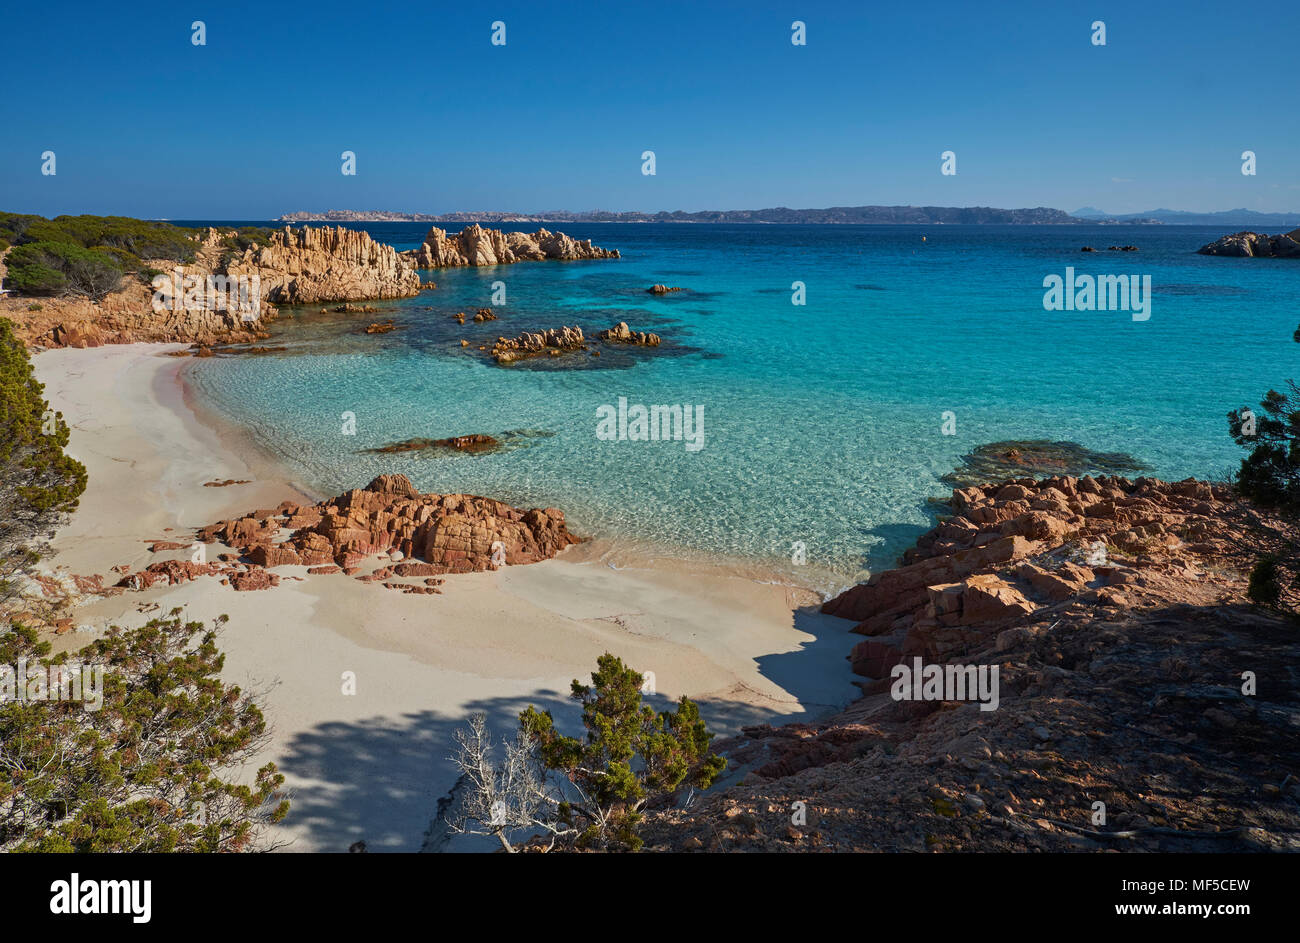 Italy, Sardinia, La Maddalena, Arcipelago di La Maddalena National Park, Spiaggia Budelli Stock Photo